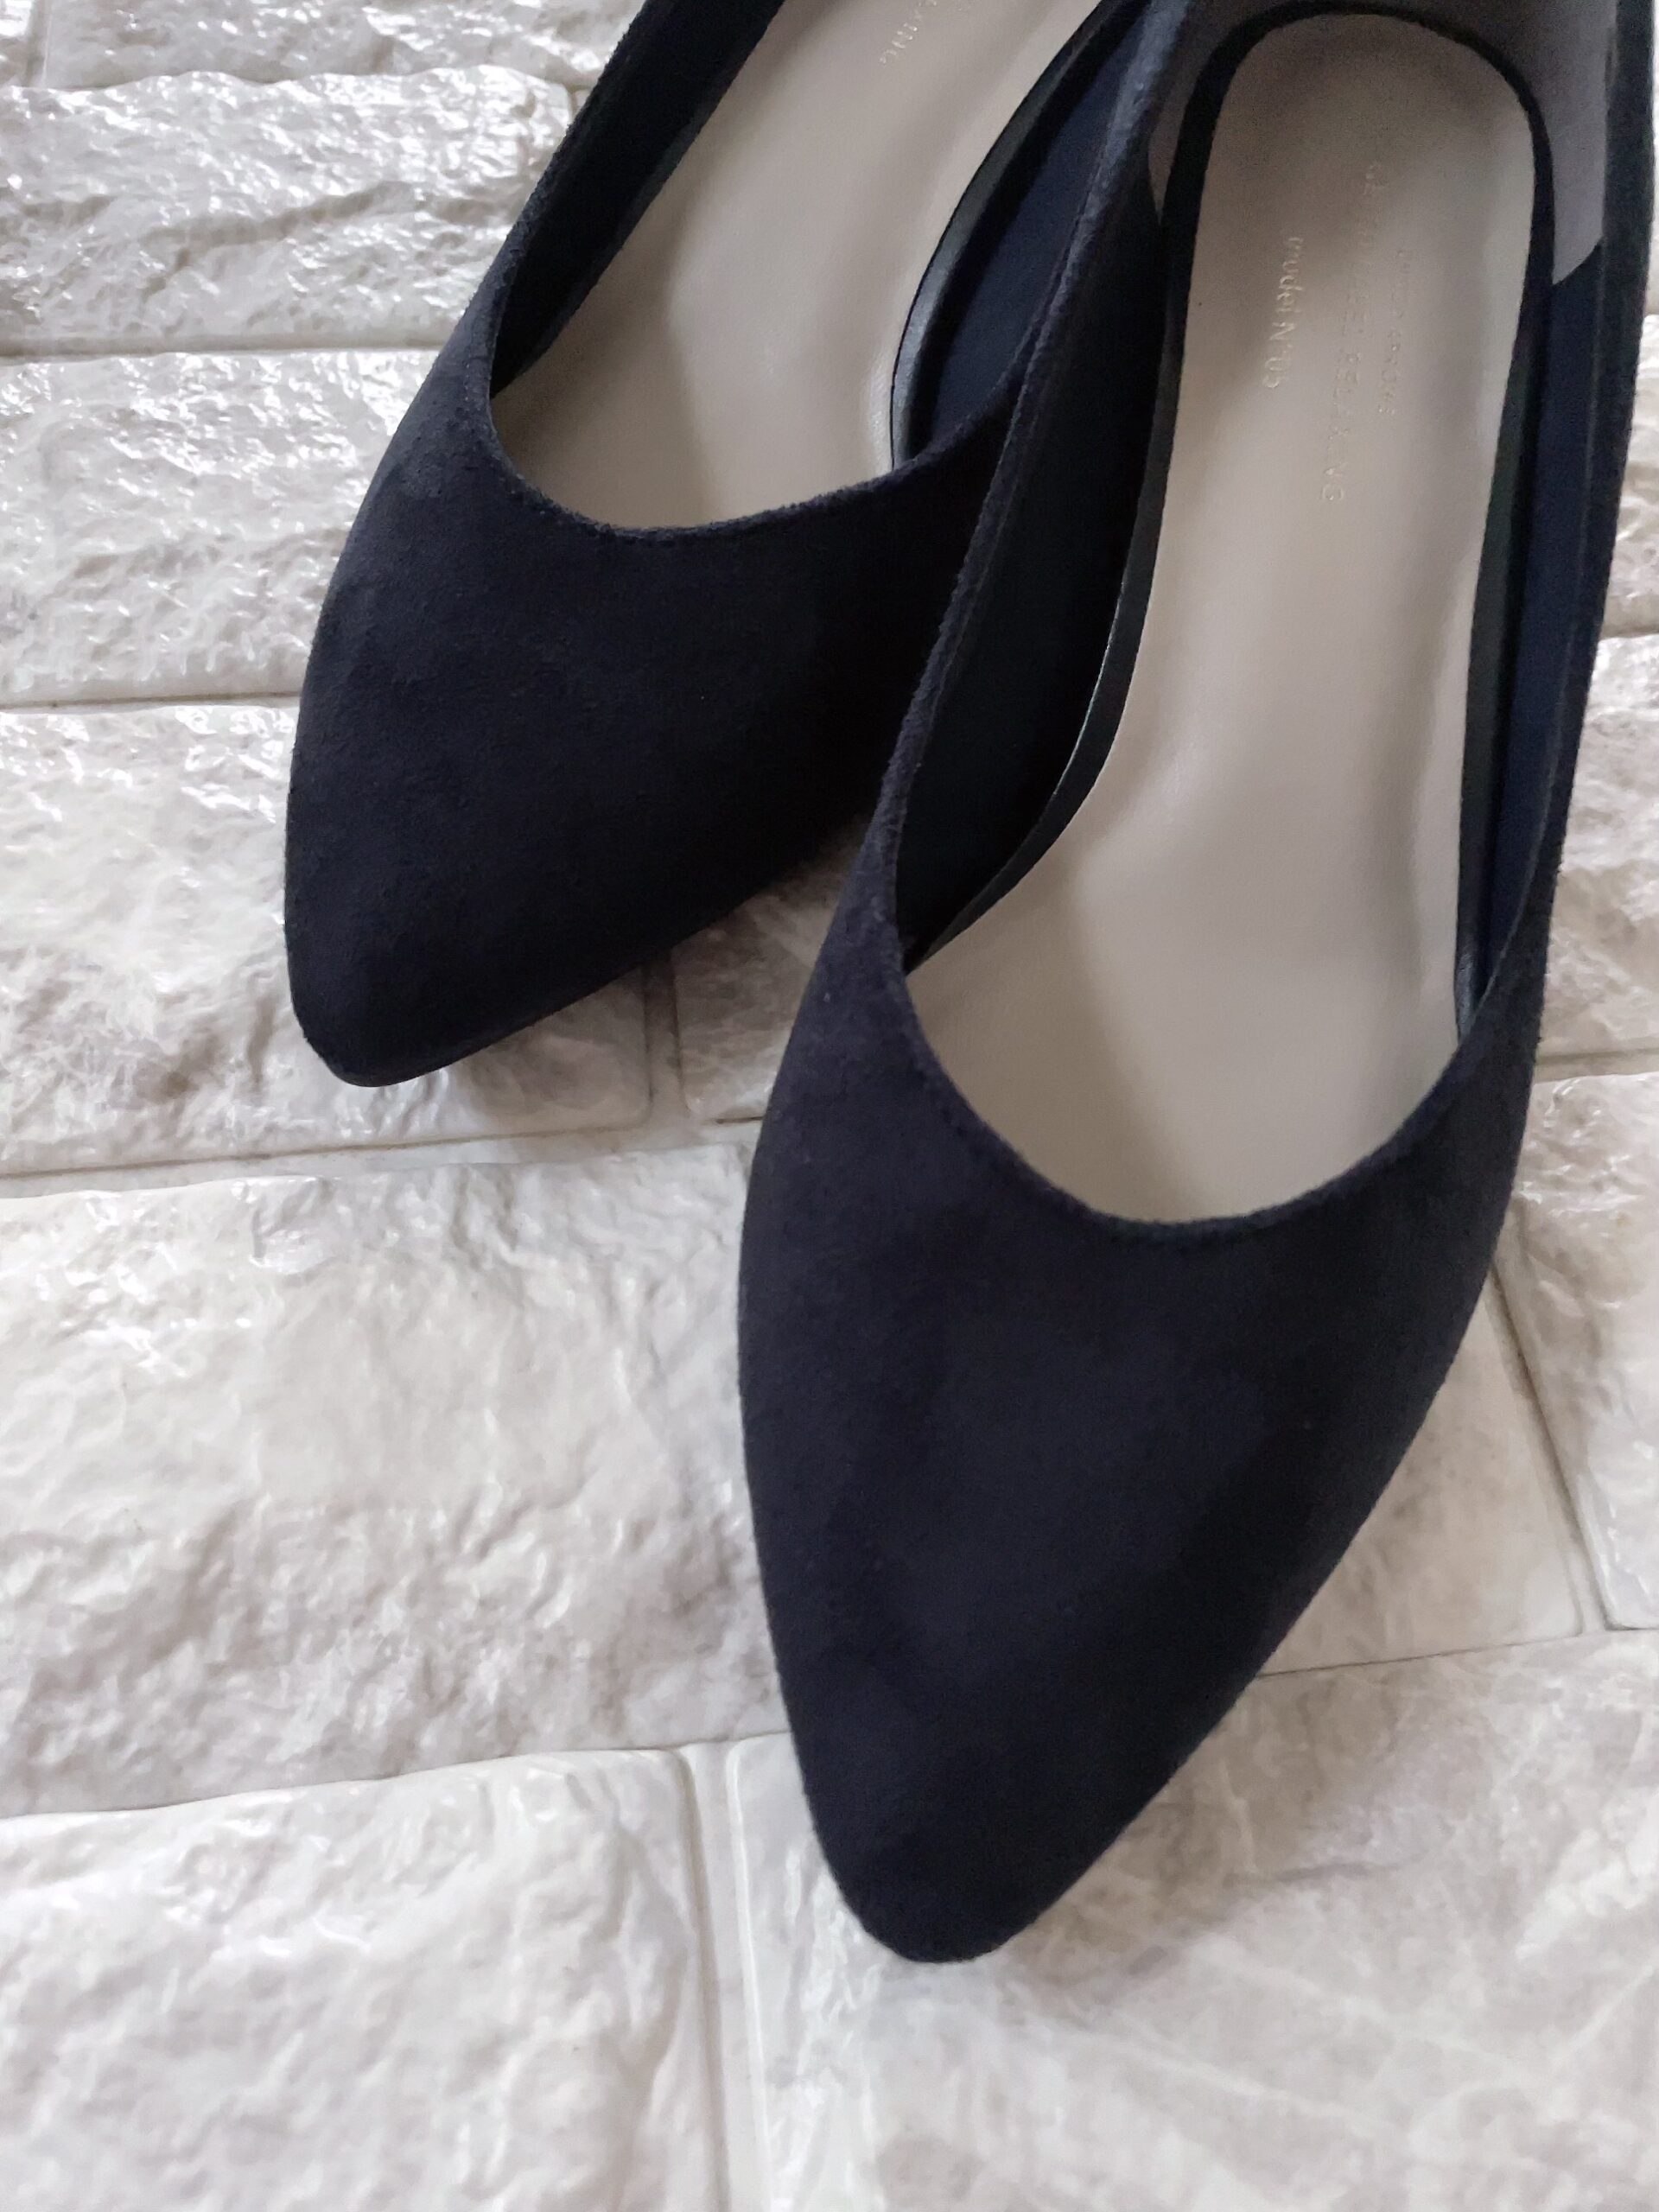 そのコーデは「黒パンプス」でOK？？おしゃれ印象を分ける靴の色 | 40代の高見えコーデブログ/ Akane's Miracle